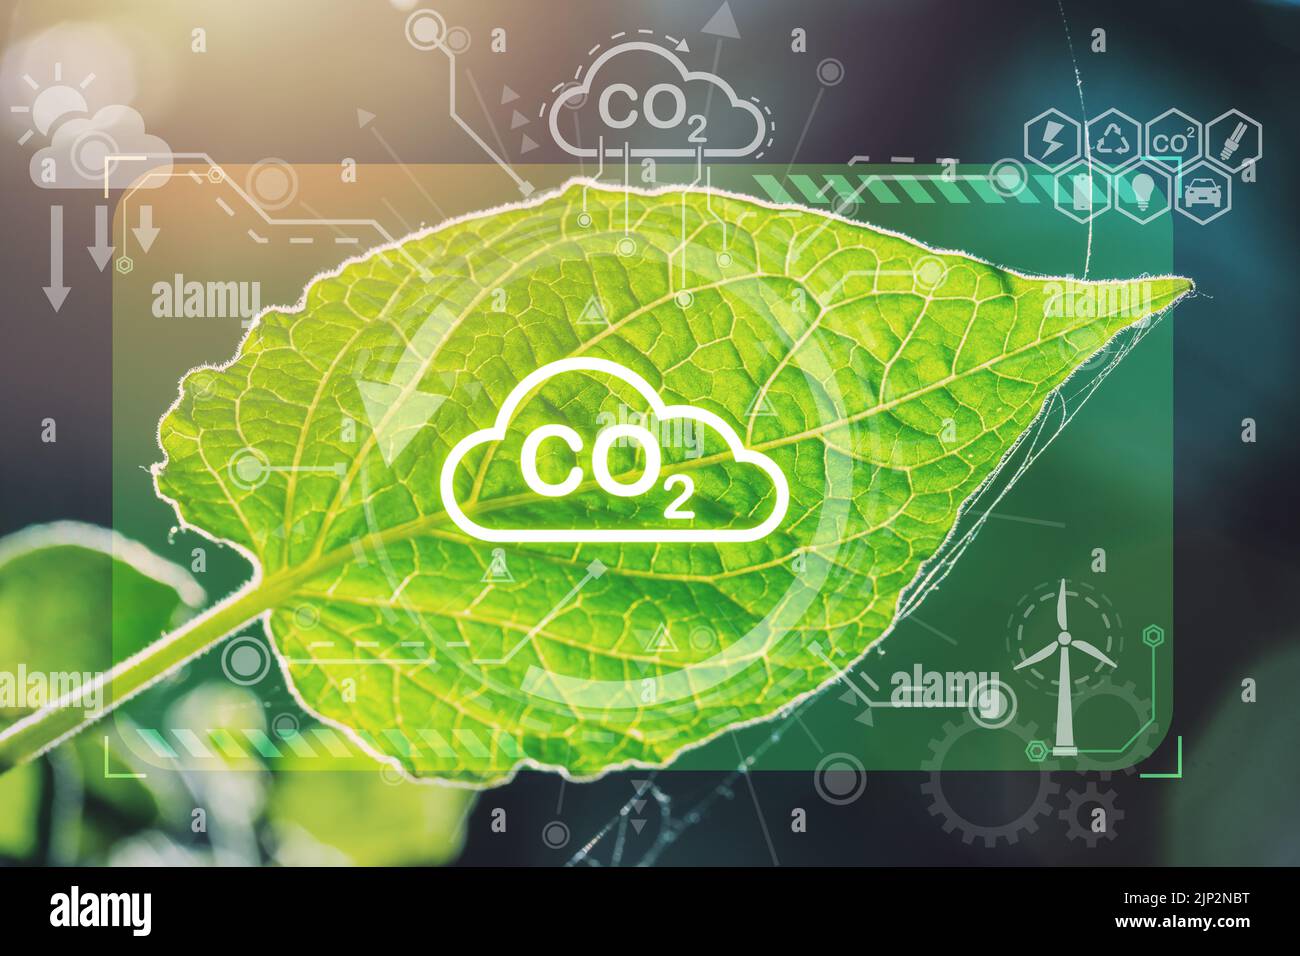 Feuille verte recouvrement photosynthèse CO2 plante nature Eco système ou cycle d'oxygène processus dans la lumière du soleil. Banque D'Images